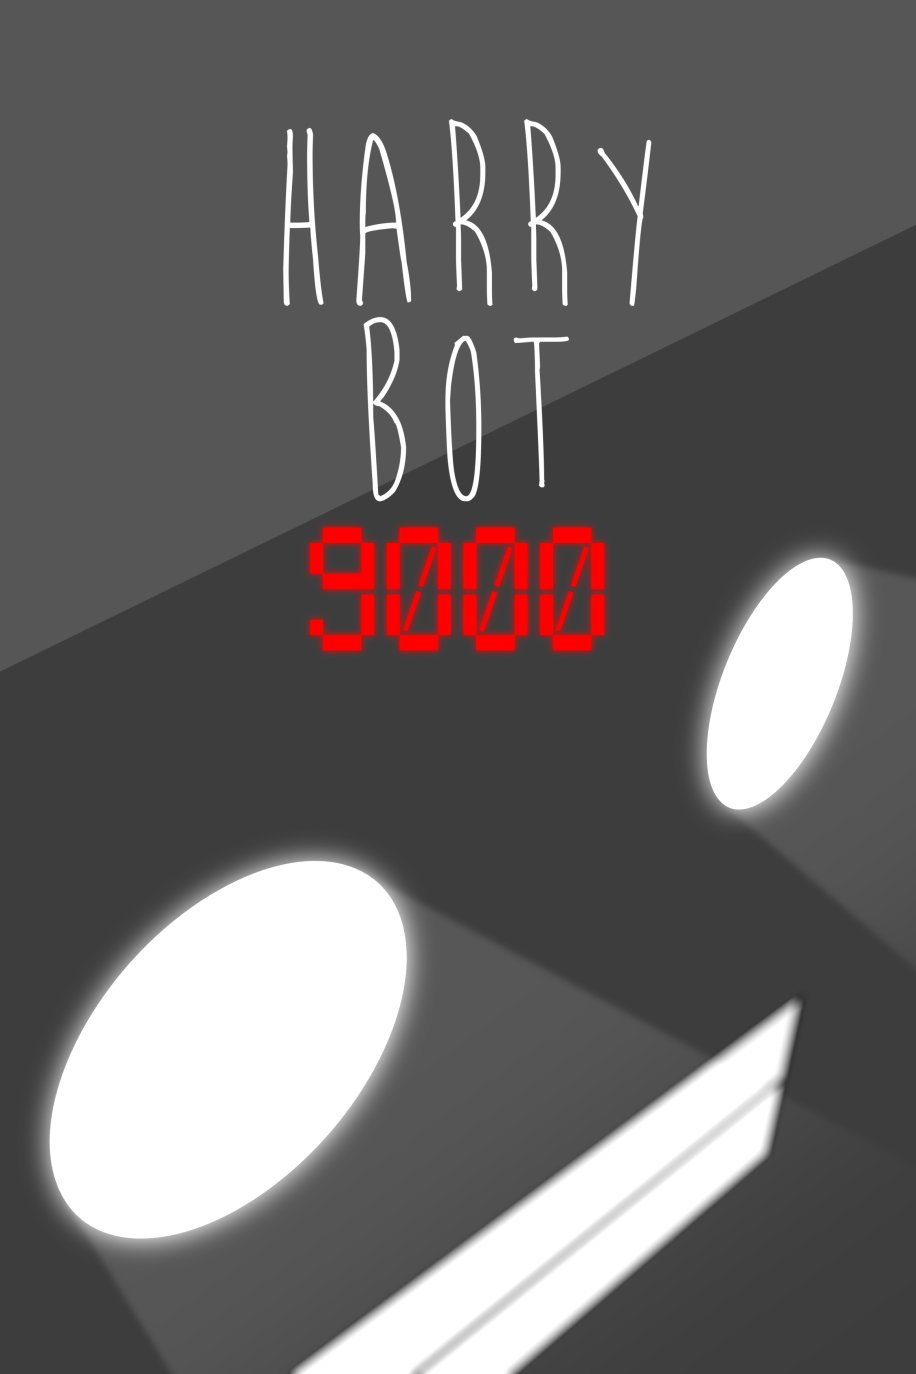 harry-bot-9000-teaser-poster-1-1-0-00-00-00.jpg